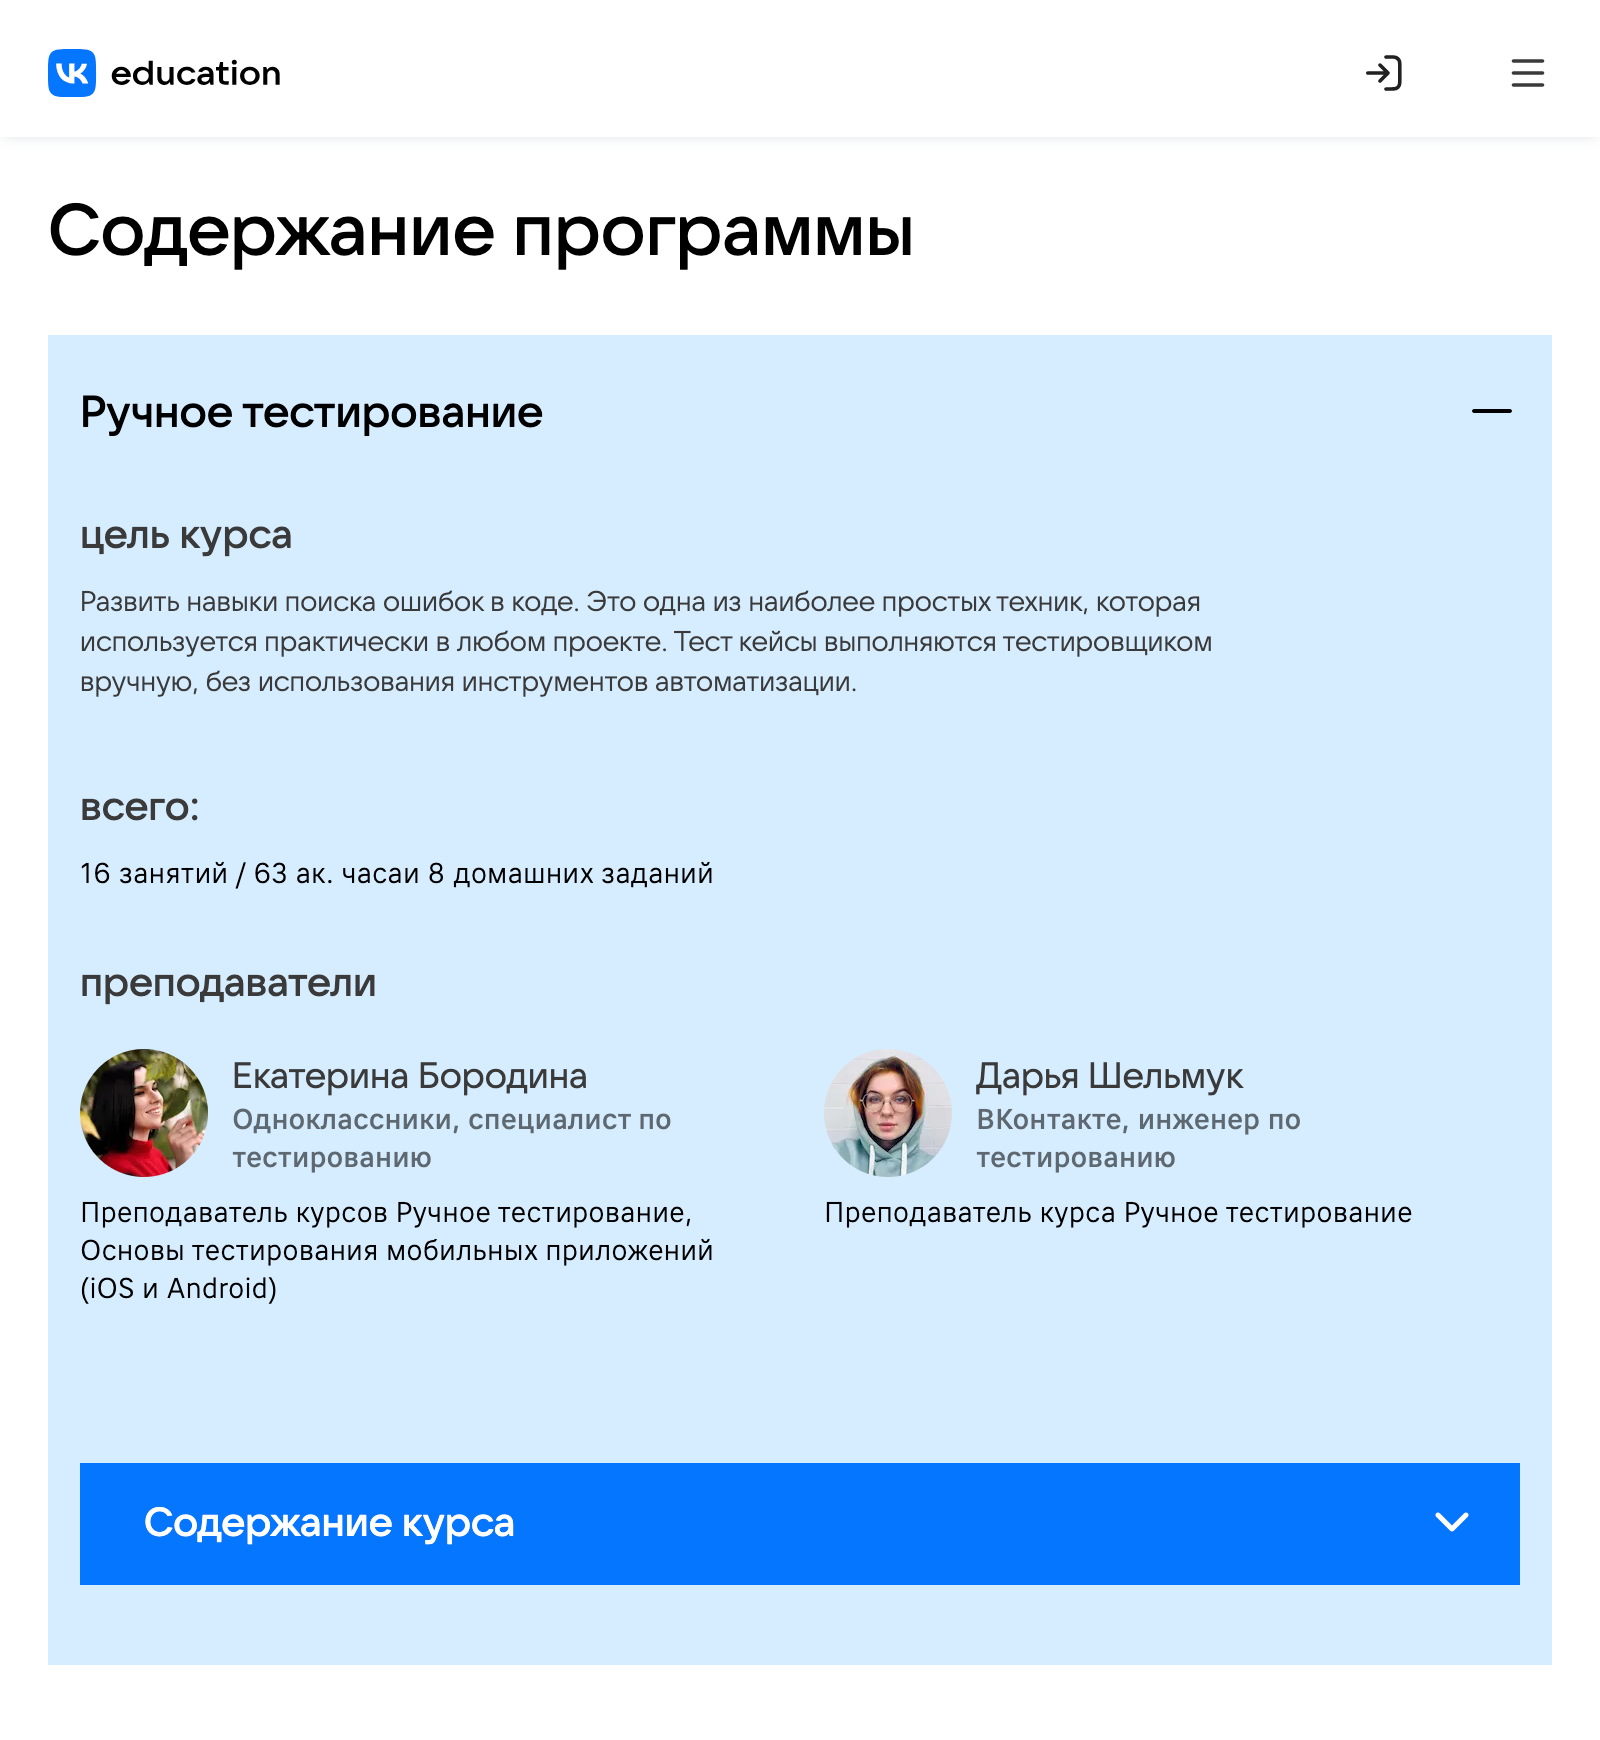 Практические навыки можно отрабатывать на любом продукте «Вконтакте»